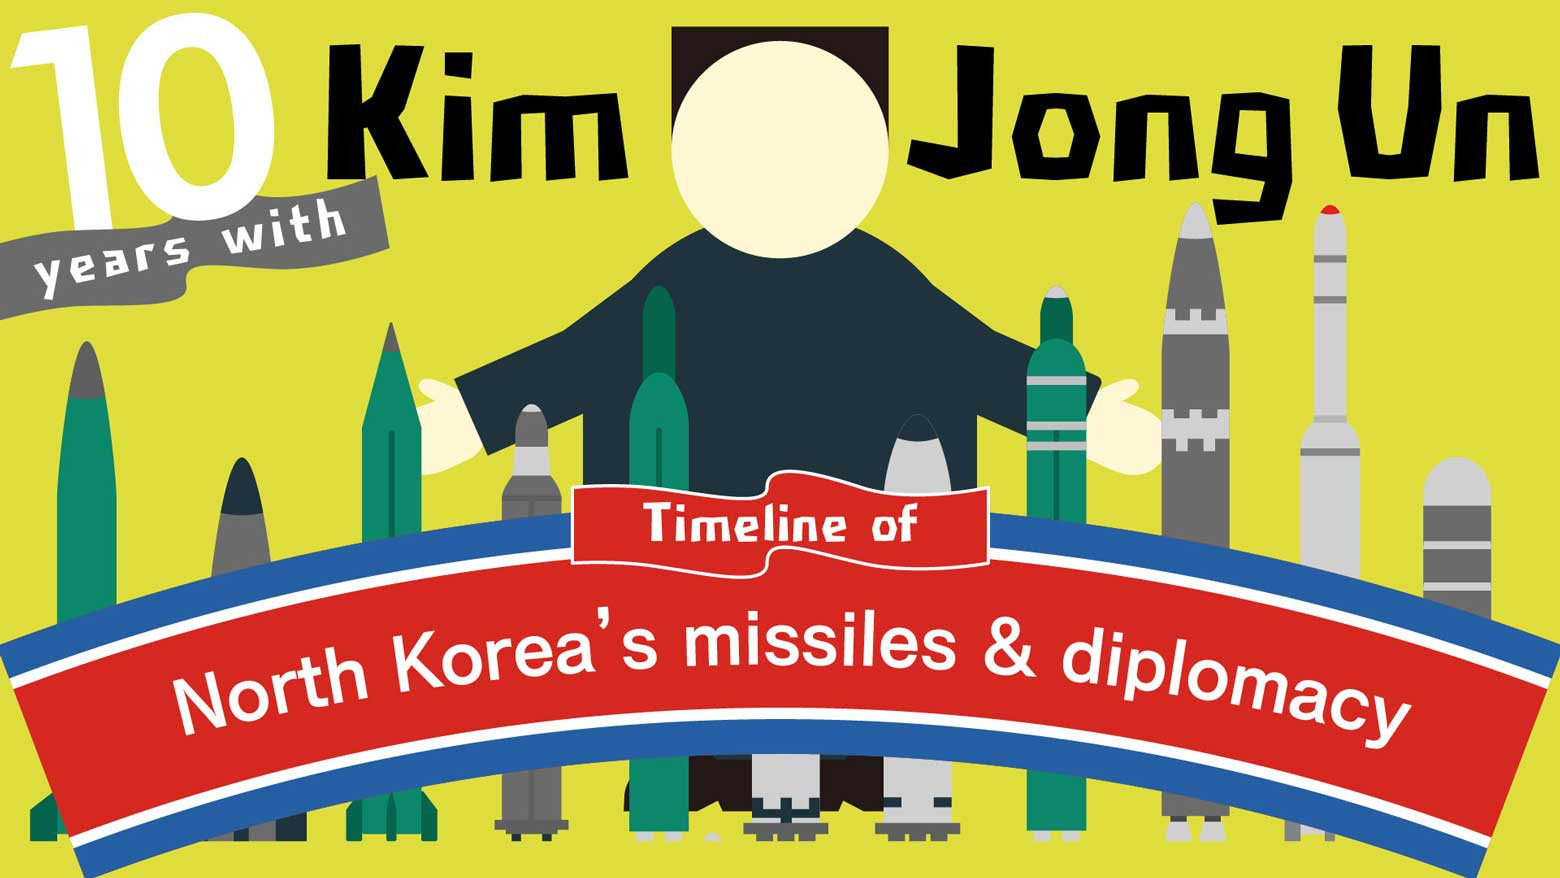 Ten years of Kim Jong Un